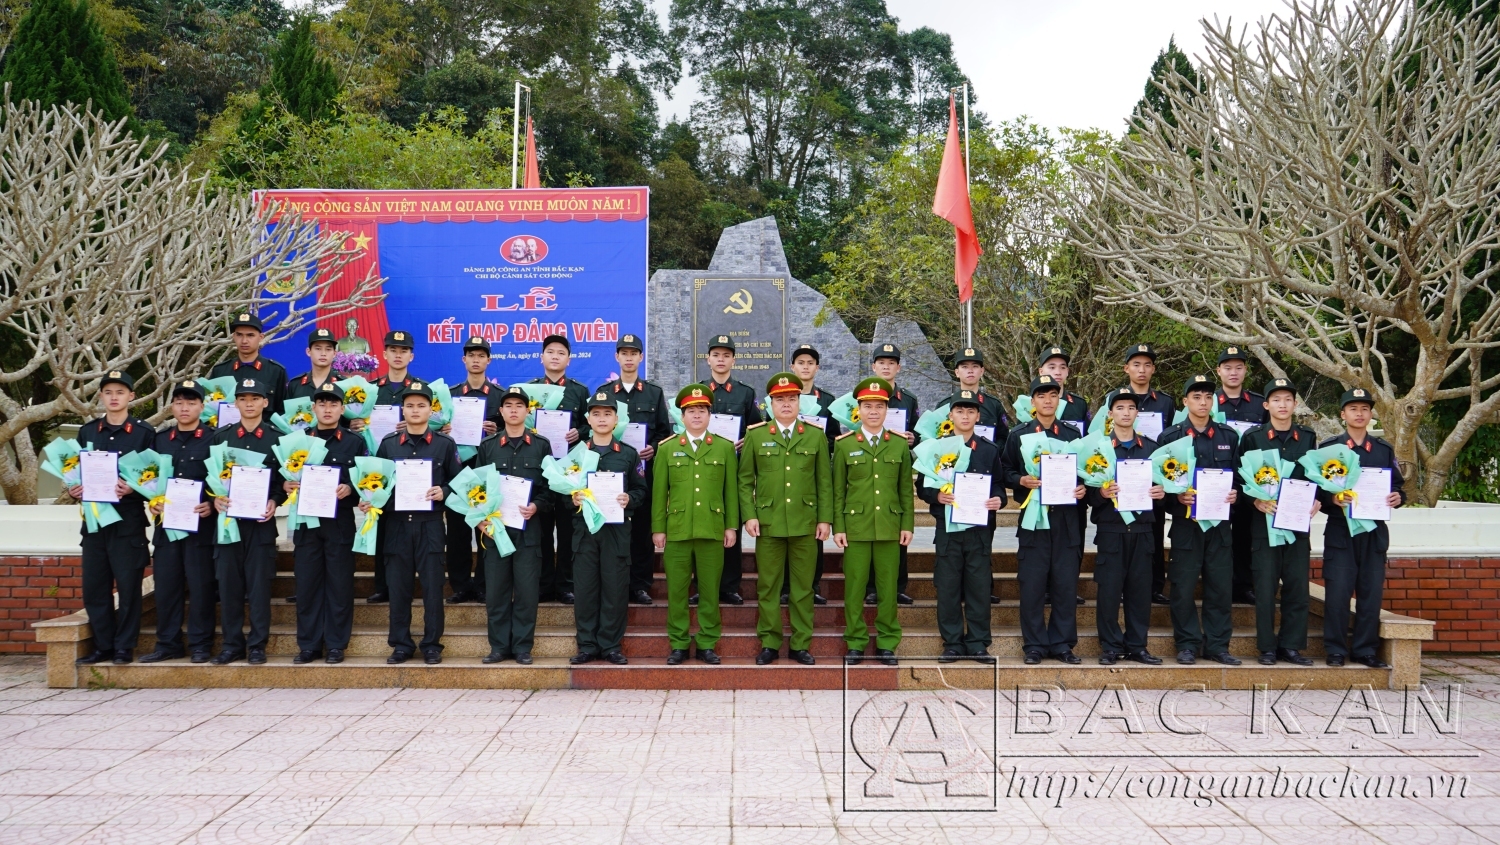 Đại diện Cấp ủy, lãnh đạo Phòng Cảnh sát Cơ động chụp ảnh với 26 đảng viên mới kết nạp